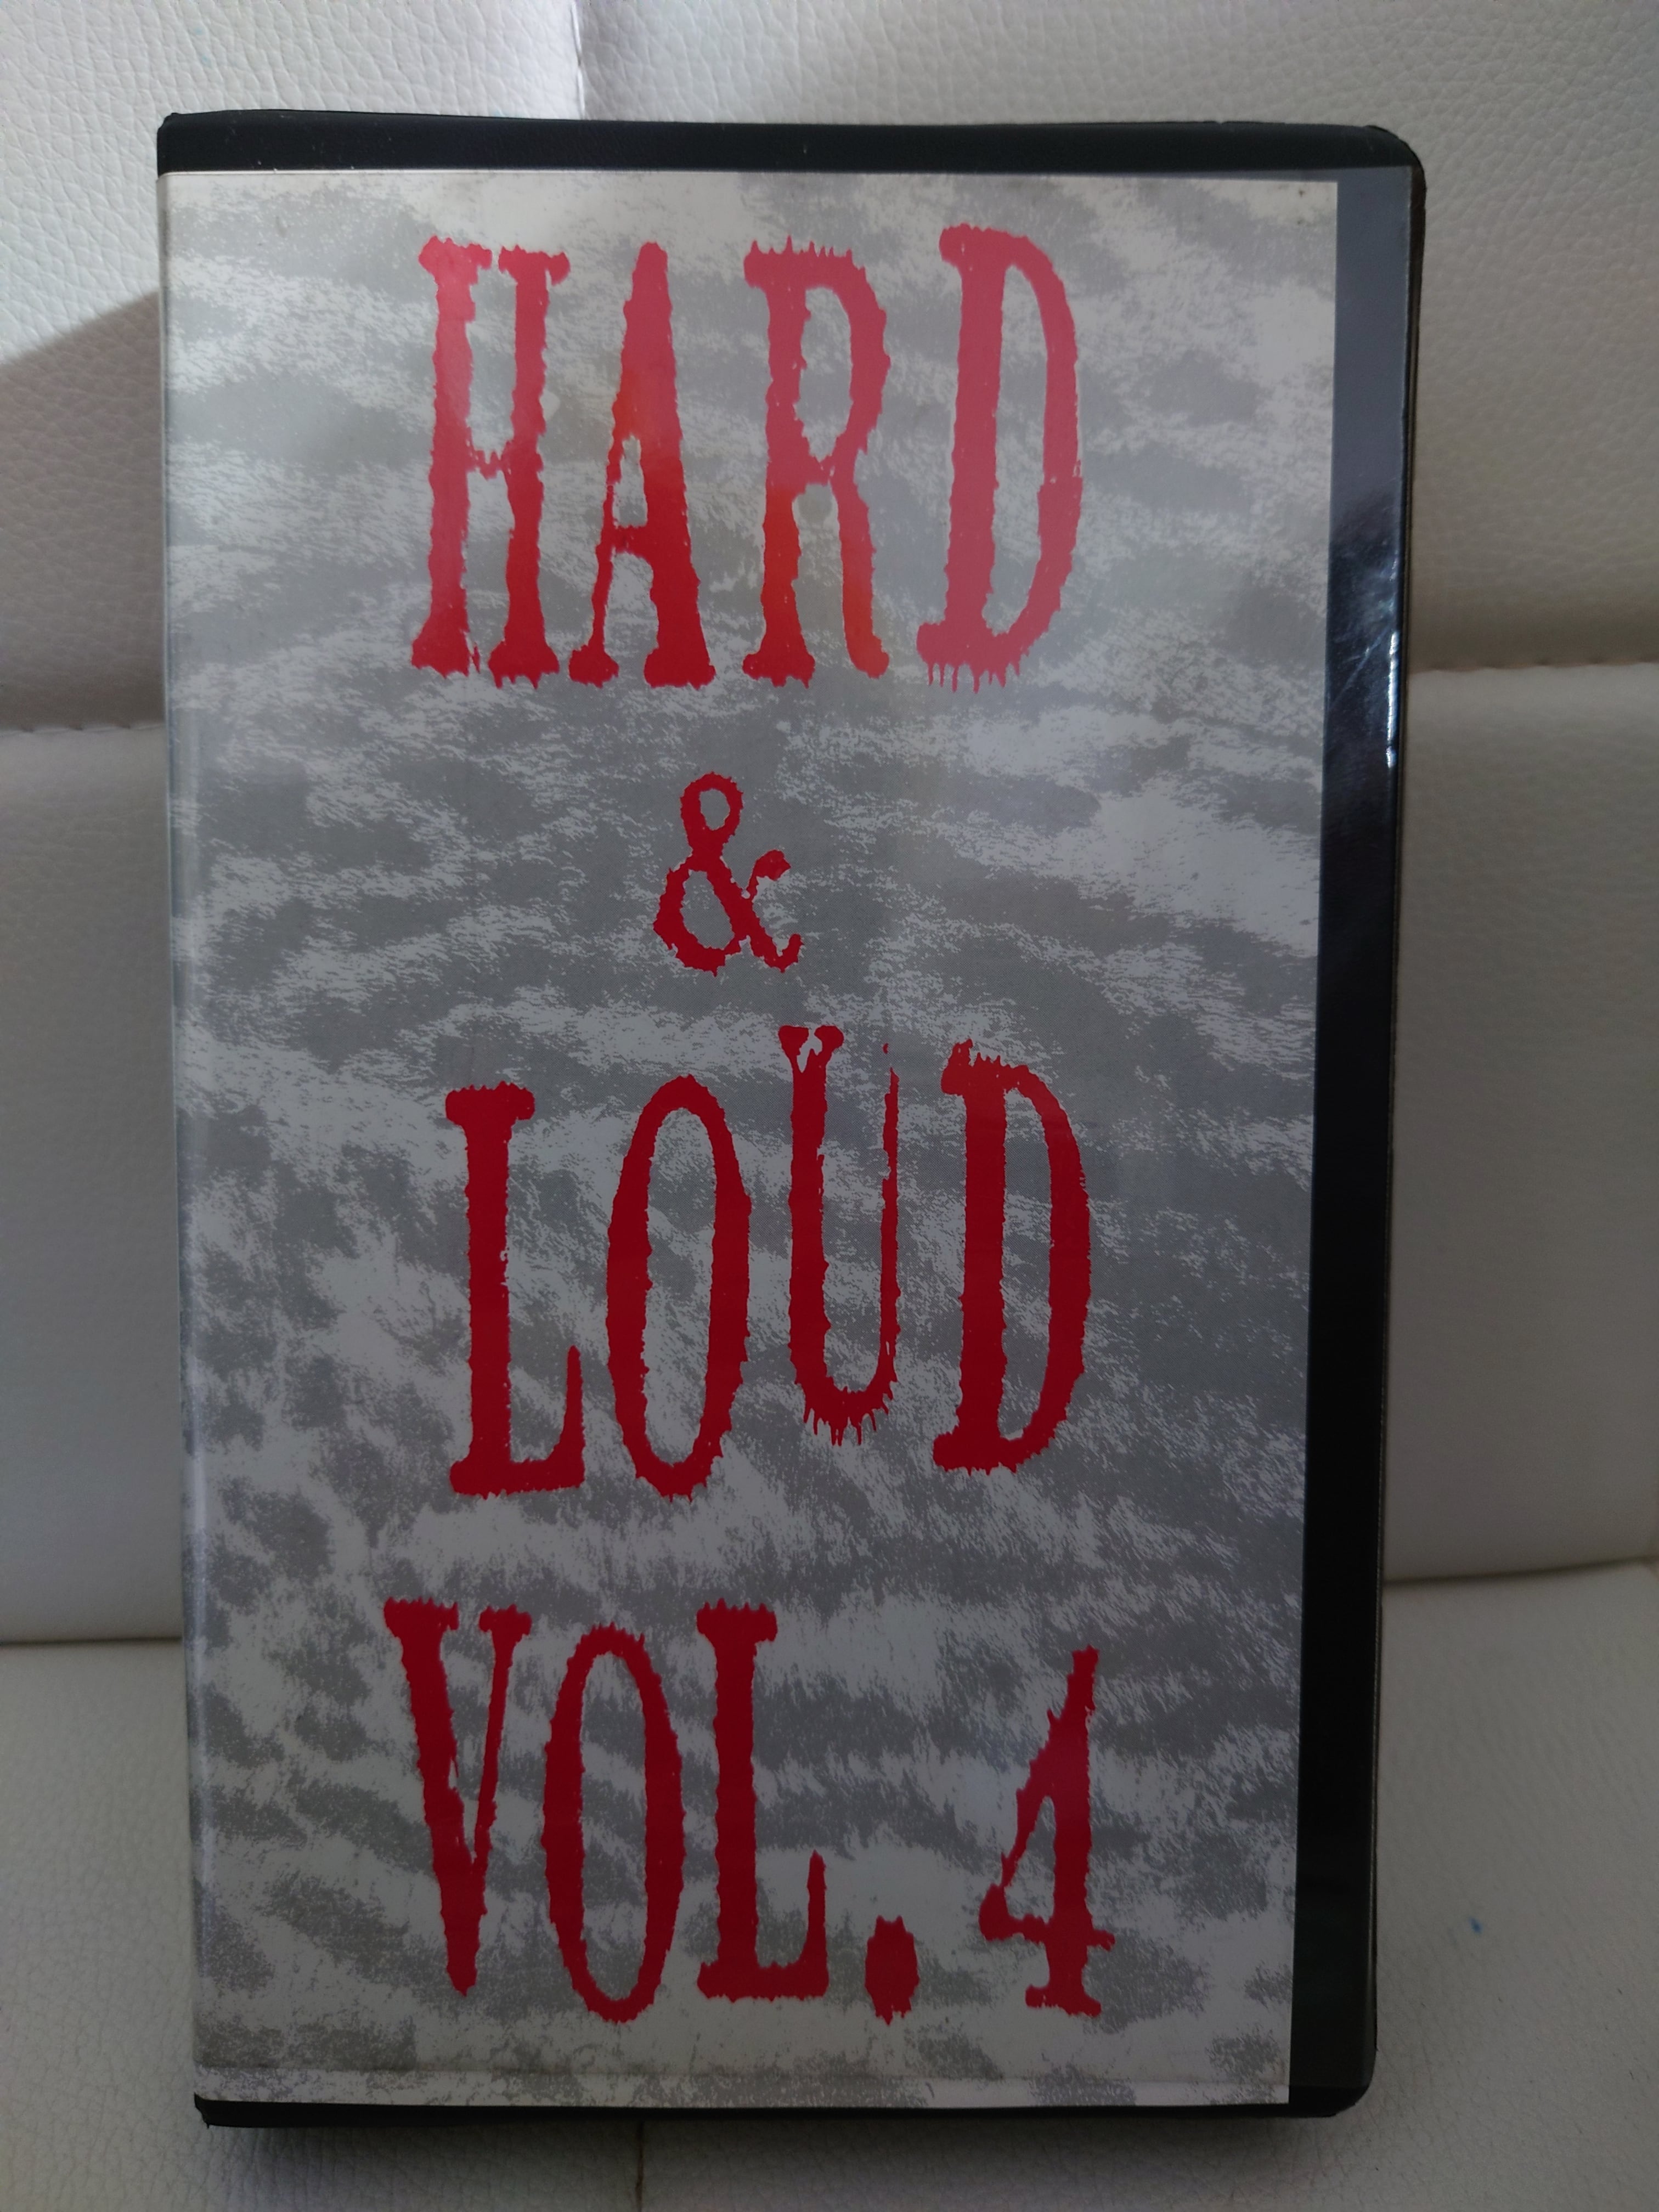  LOUD vol.4 RECORD SHOP CONQUEST/レコードショップコンクエスト